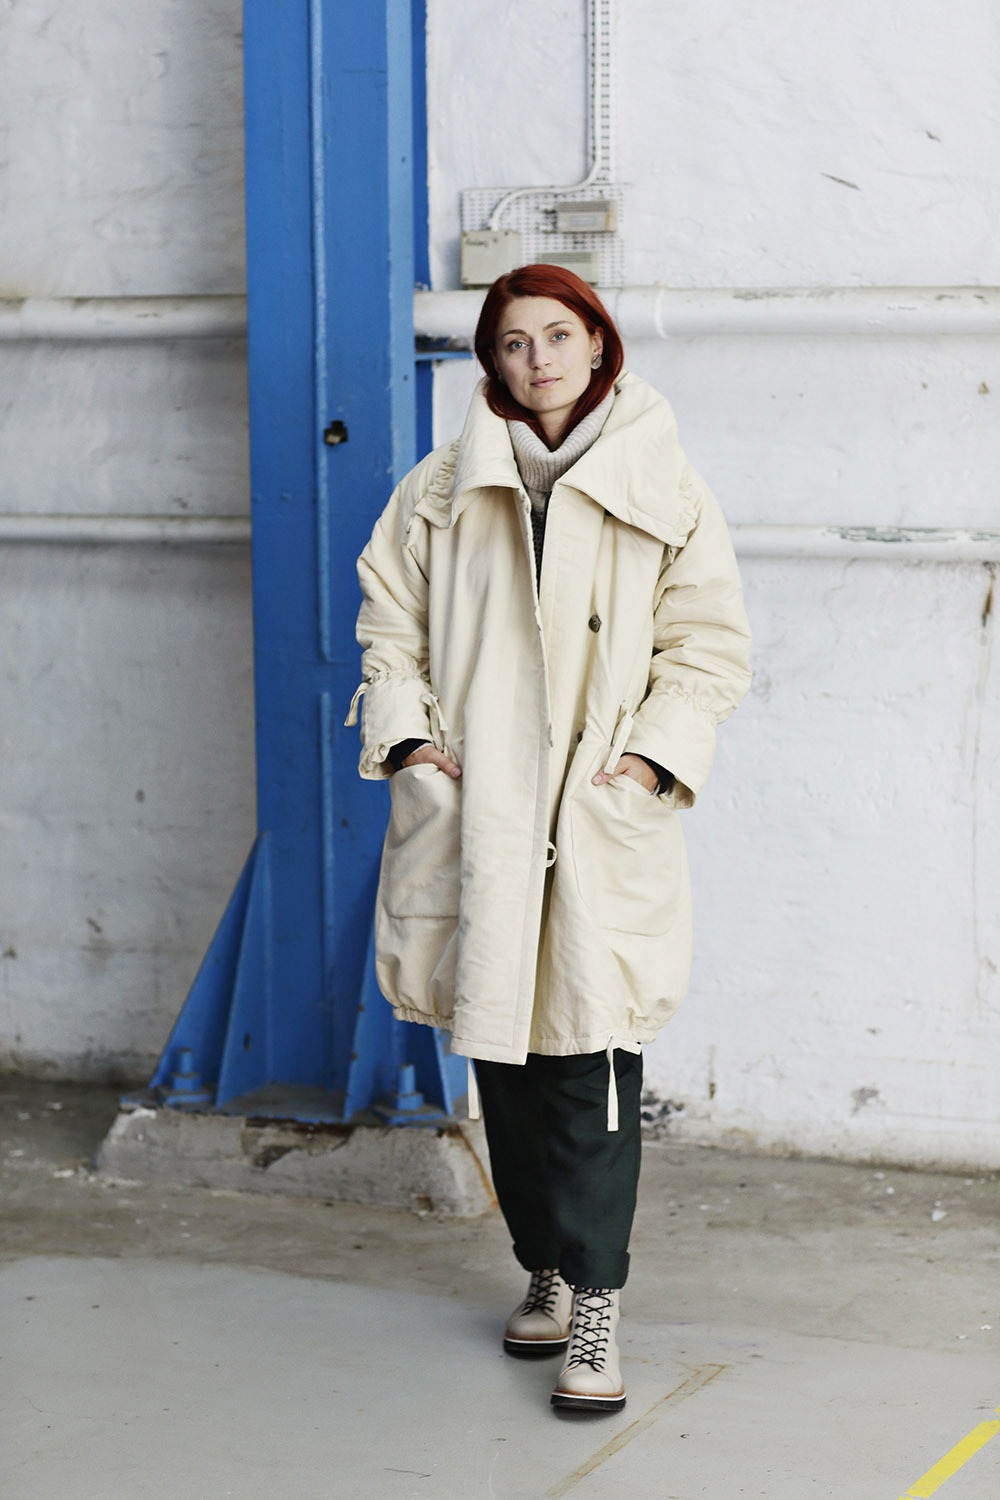 Assimilate høj flicker hvid vinterfrakke | mcverdi frakke | varm jakke med knapper | kvinder